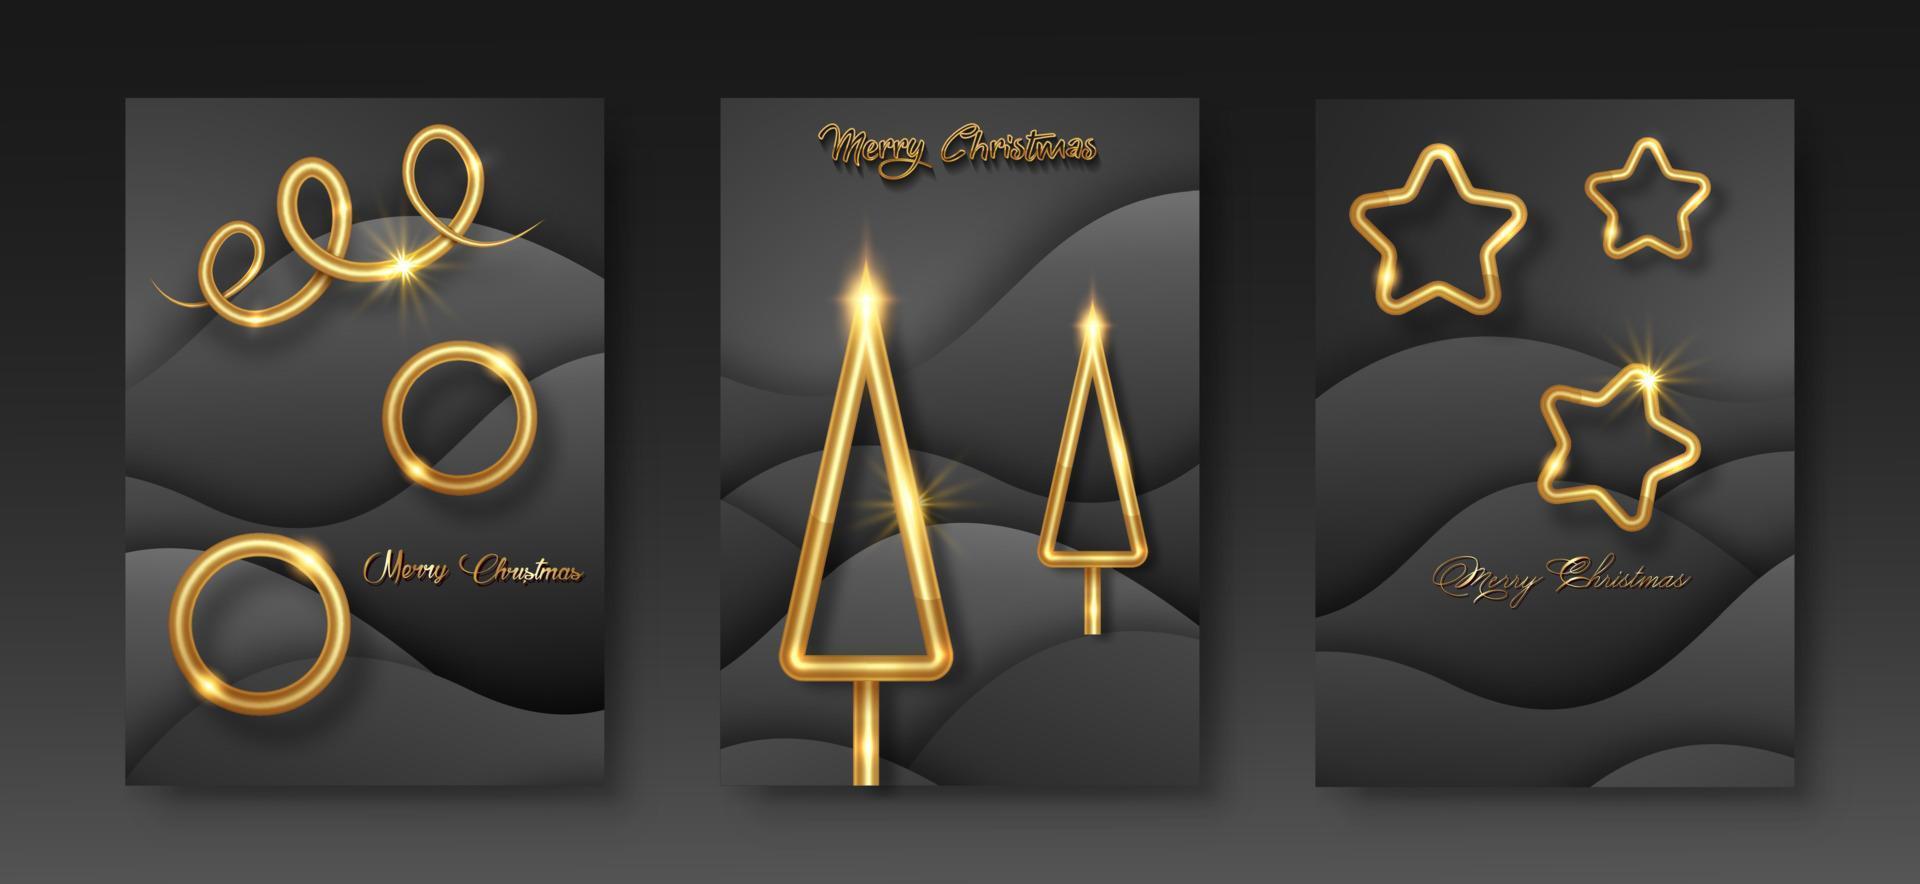 poner tarjetas feliz navidad textura dorada, elementos dorados de lujo, fondo de corte de papel negro para calendario y tarjeta de saludos o invitaciones de vacaciones de invierno con temática navideña con decoraciones geométricas vector